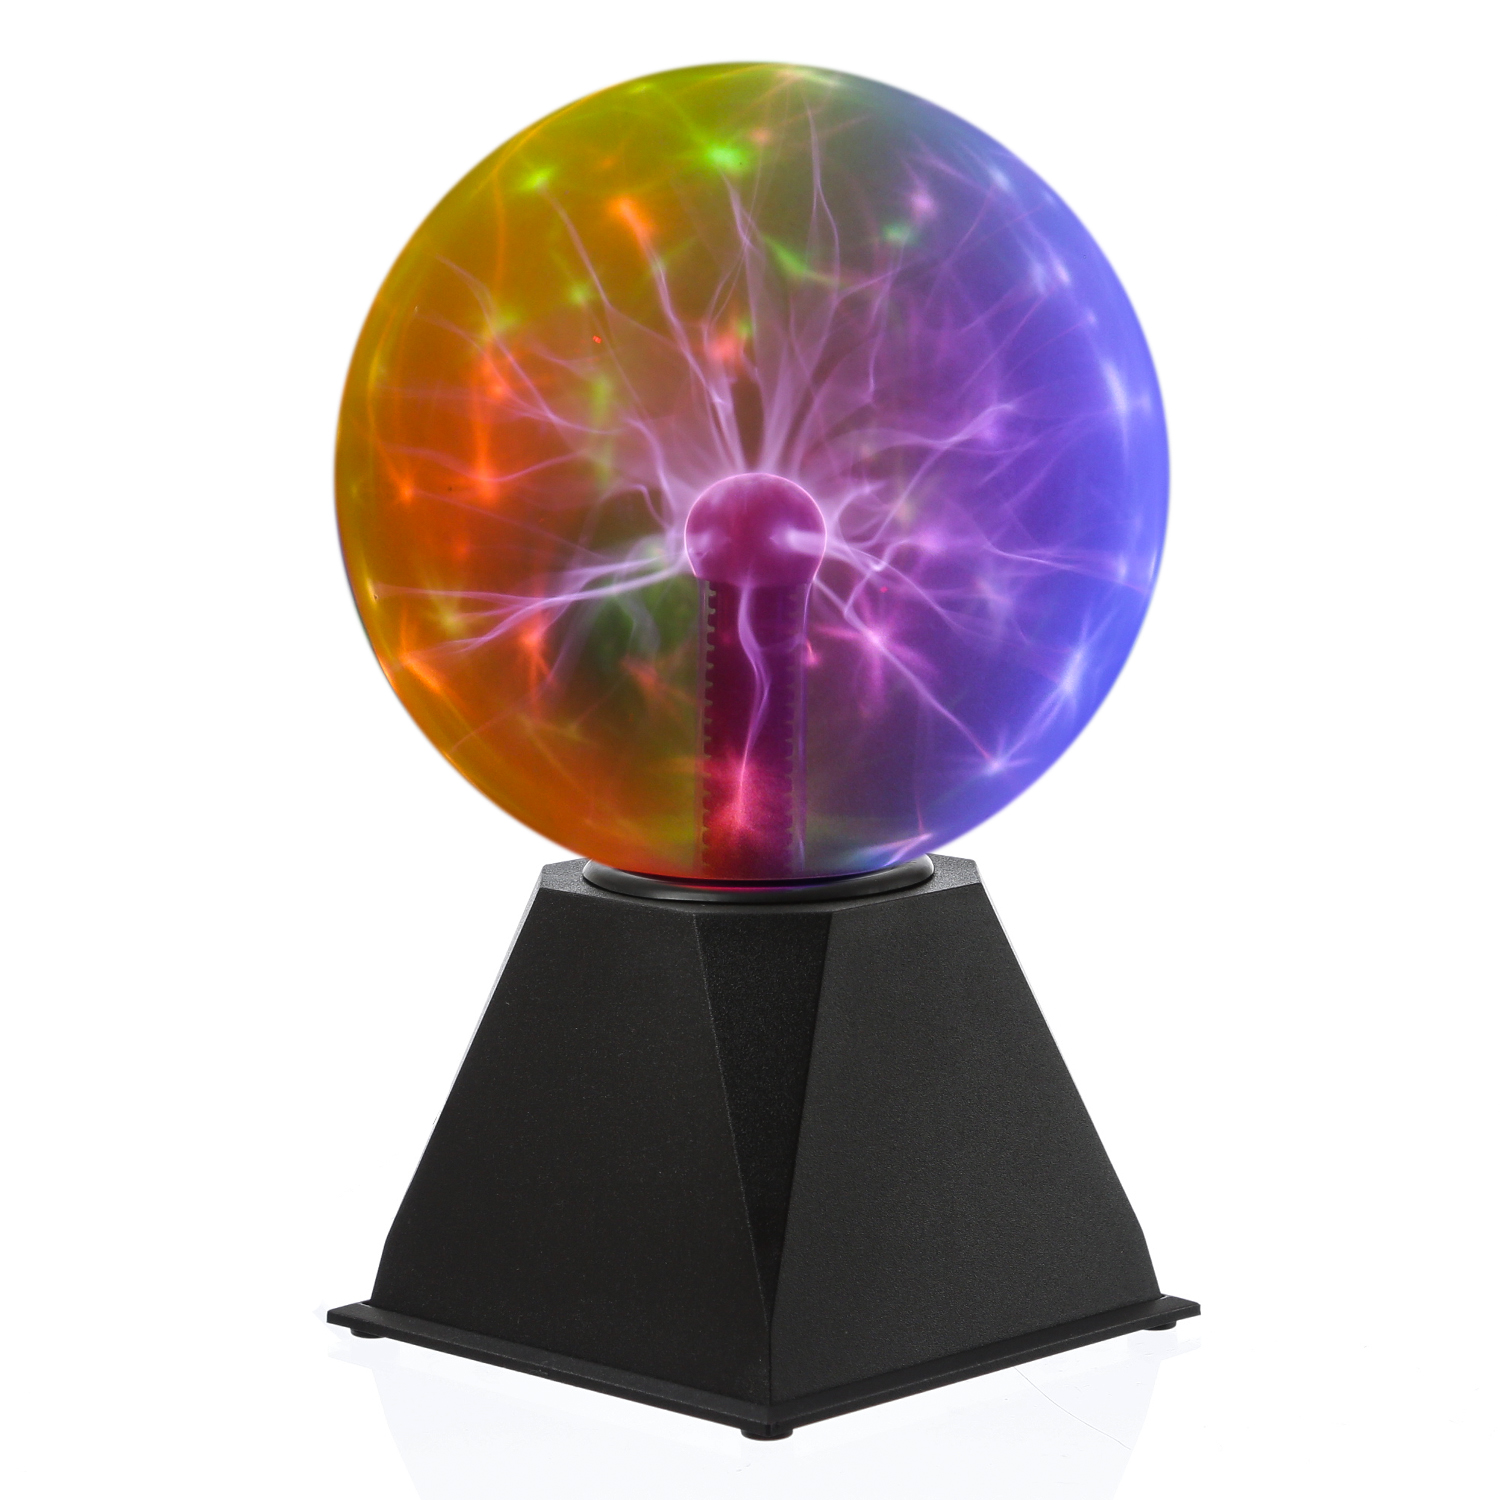 Plasmakugel multicolor- zuckende Blitz-Show  Automatik oder Musiksteuerung - 15cm Kugel